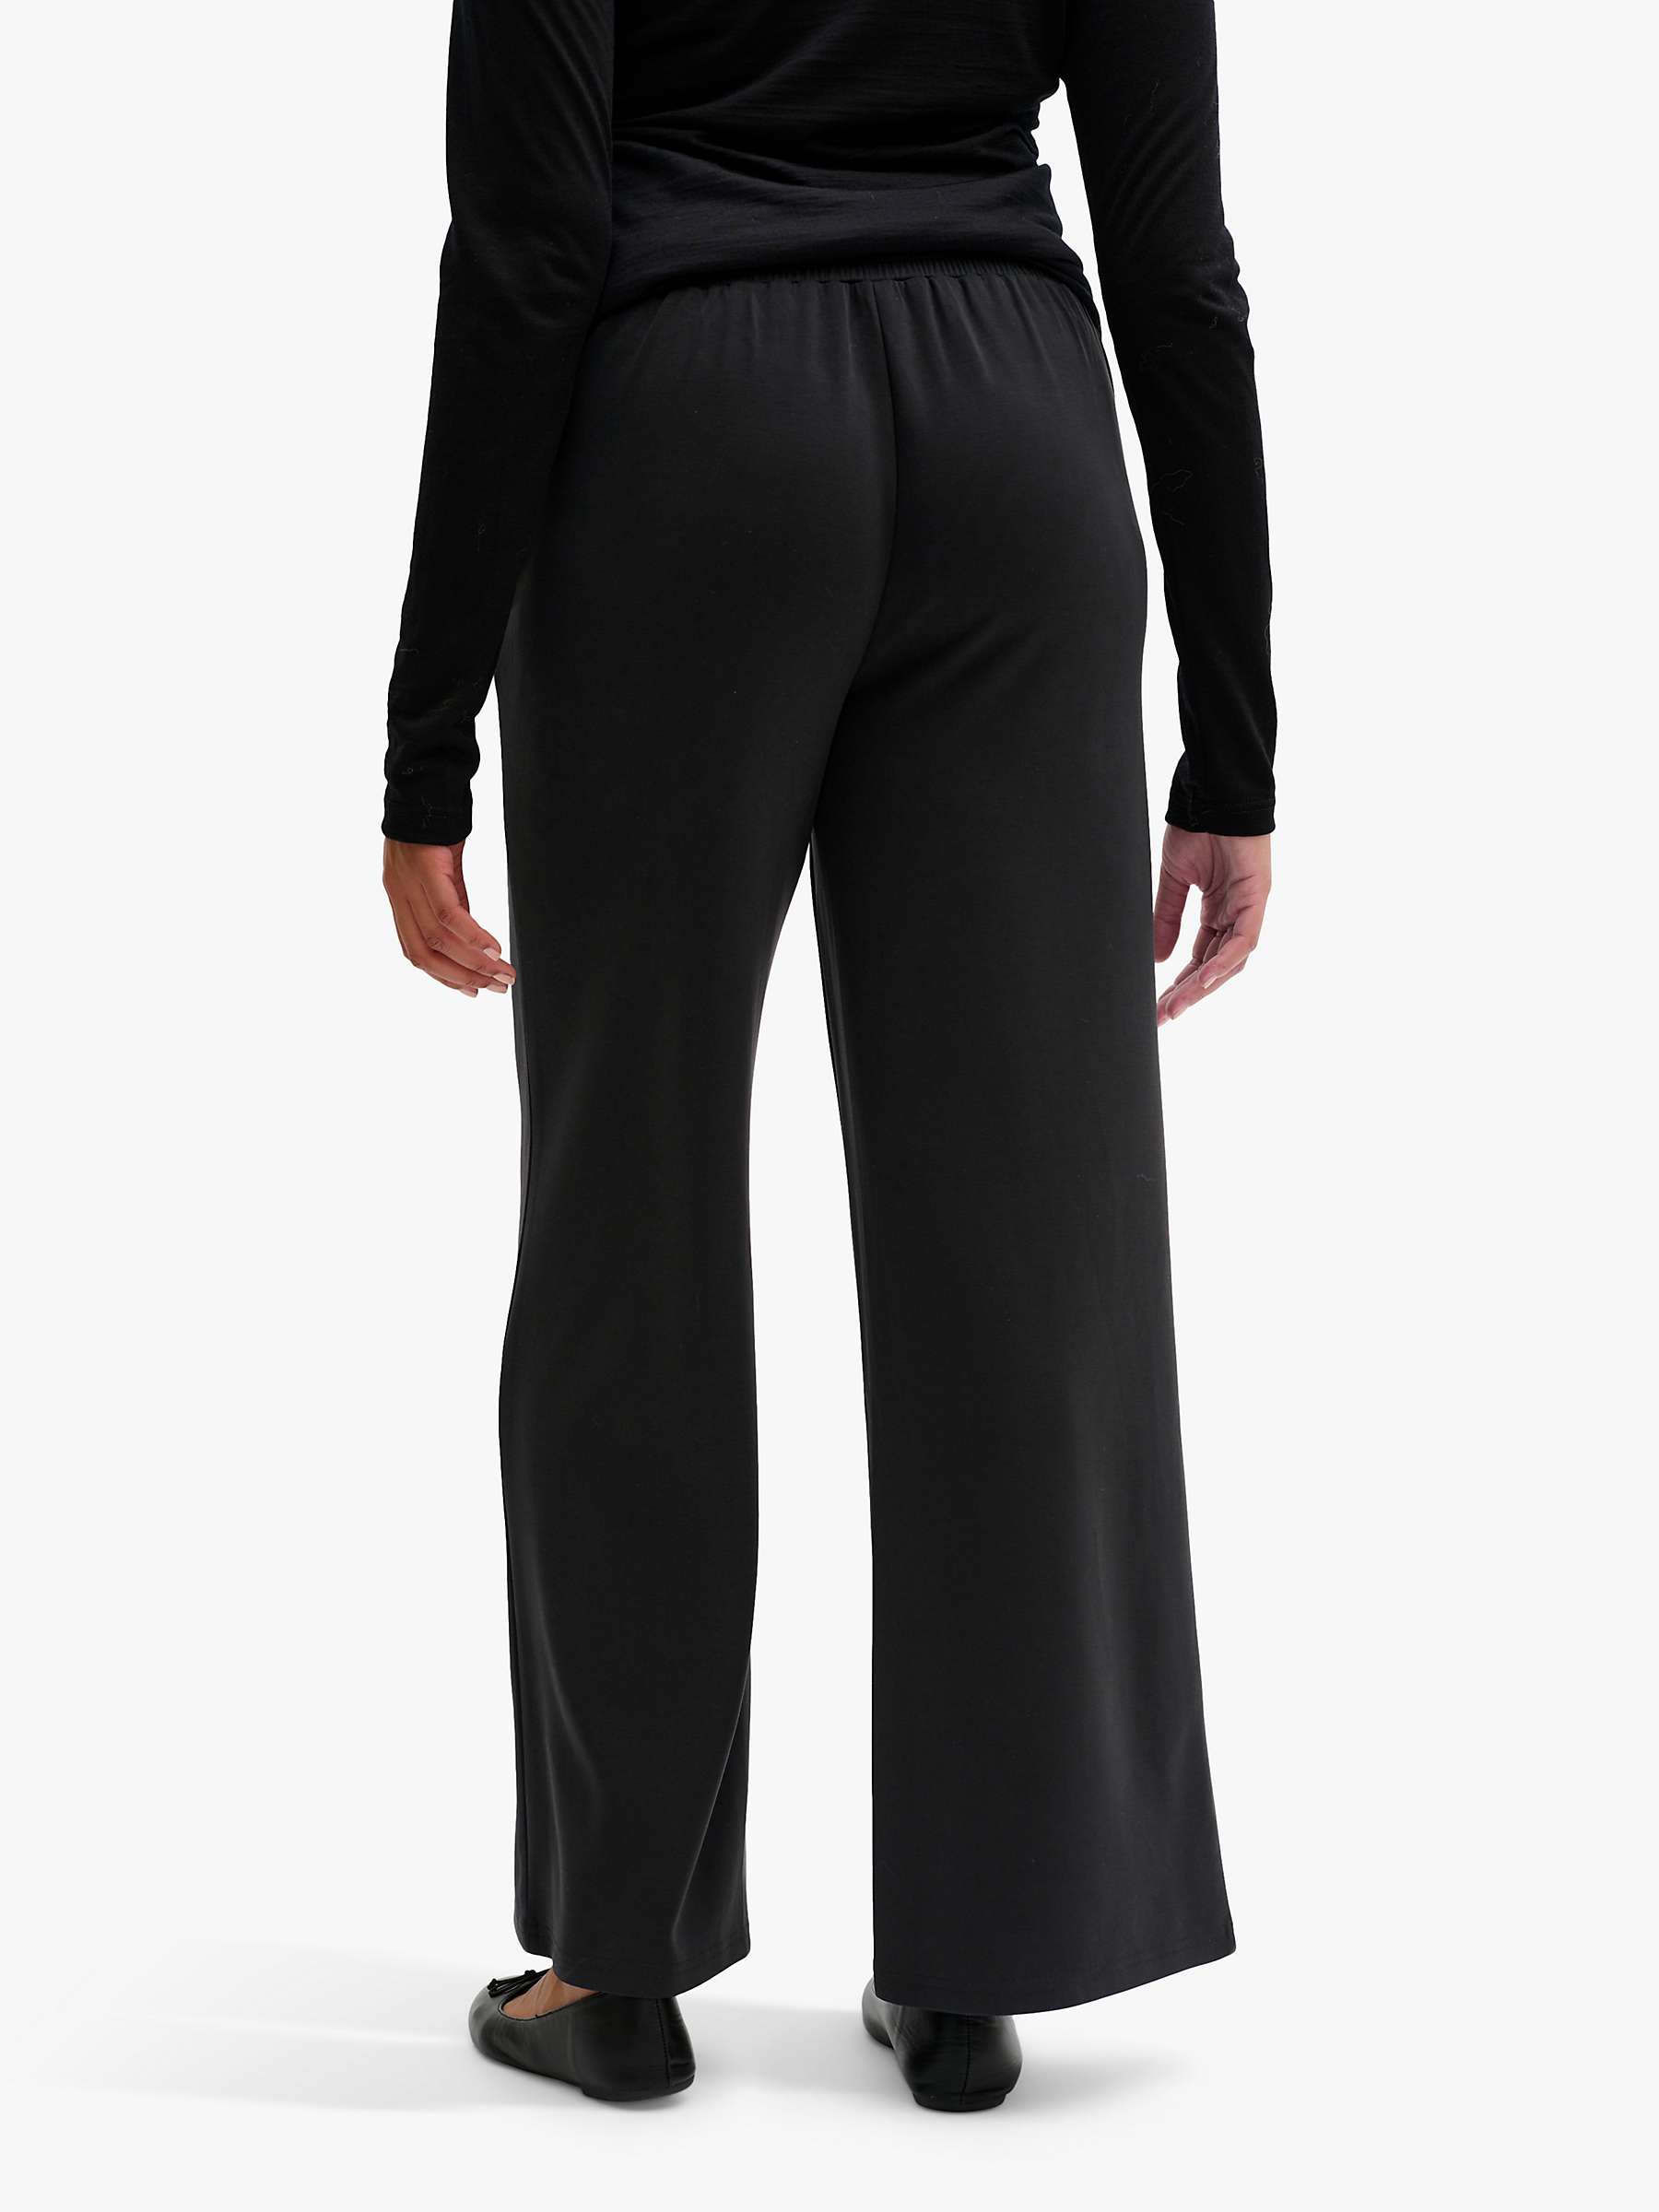 Buy MY ESSENTIAL WARDROBE Elle Wide Leg Trousers, Black Online at johnlewis.com